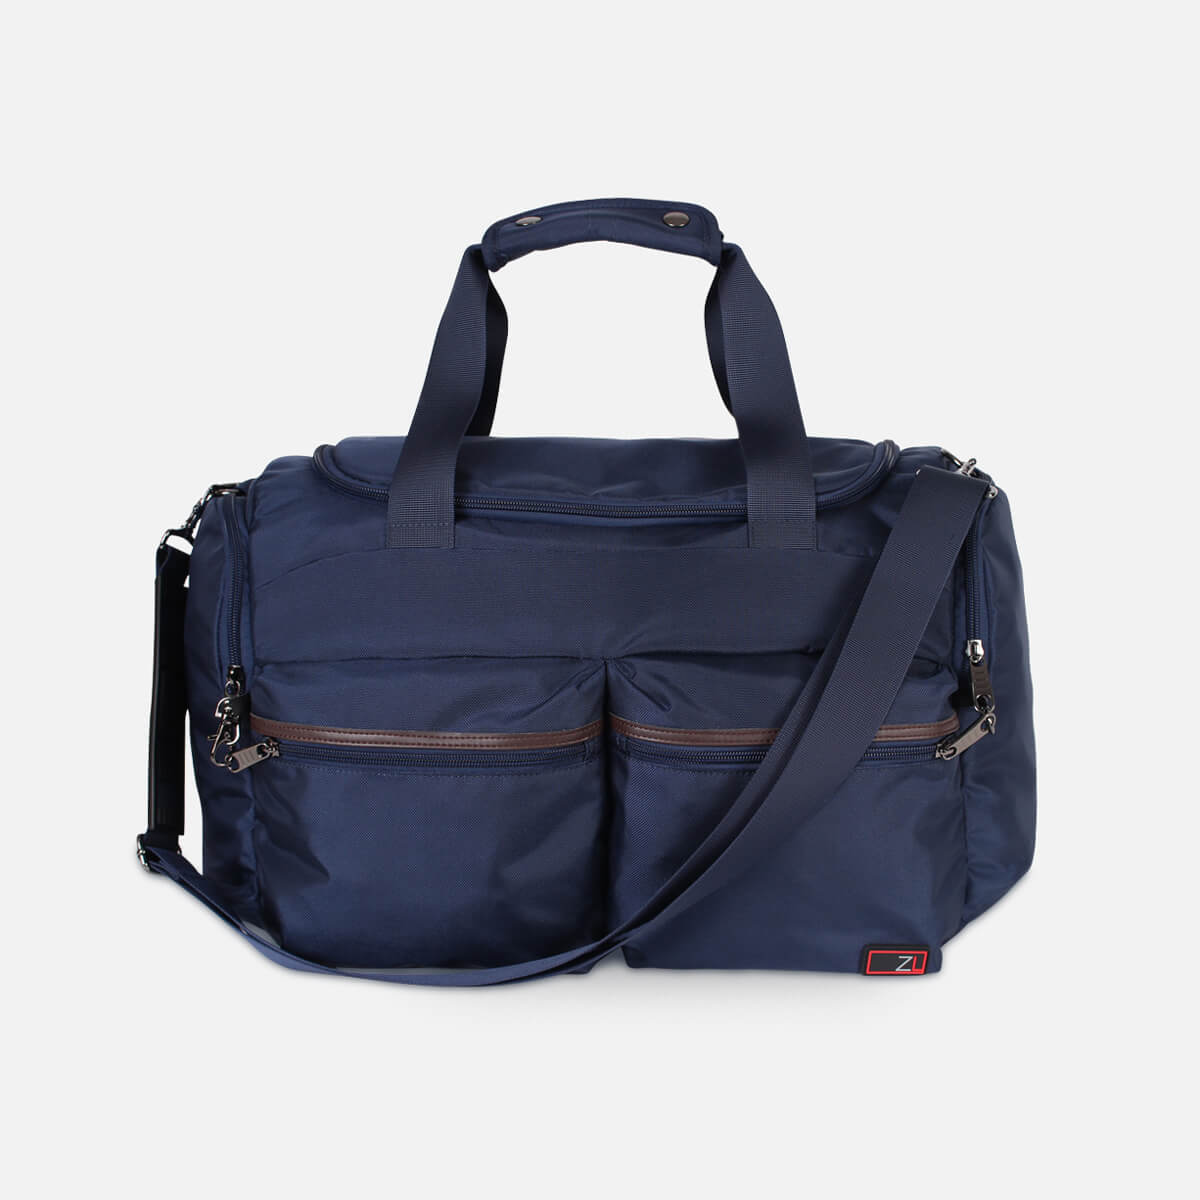 Carry on Weekender Travel Tote Bag | AntiTheft | RFID| Zoomlite